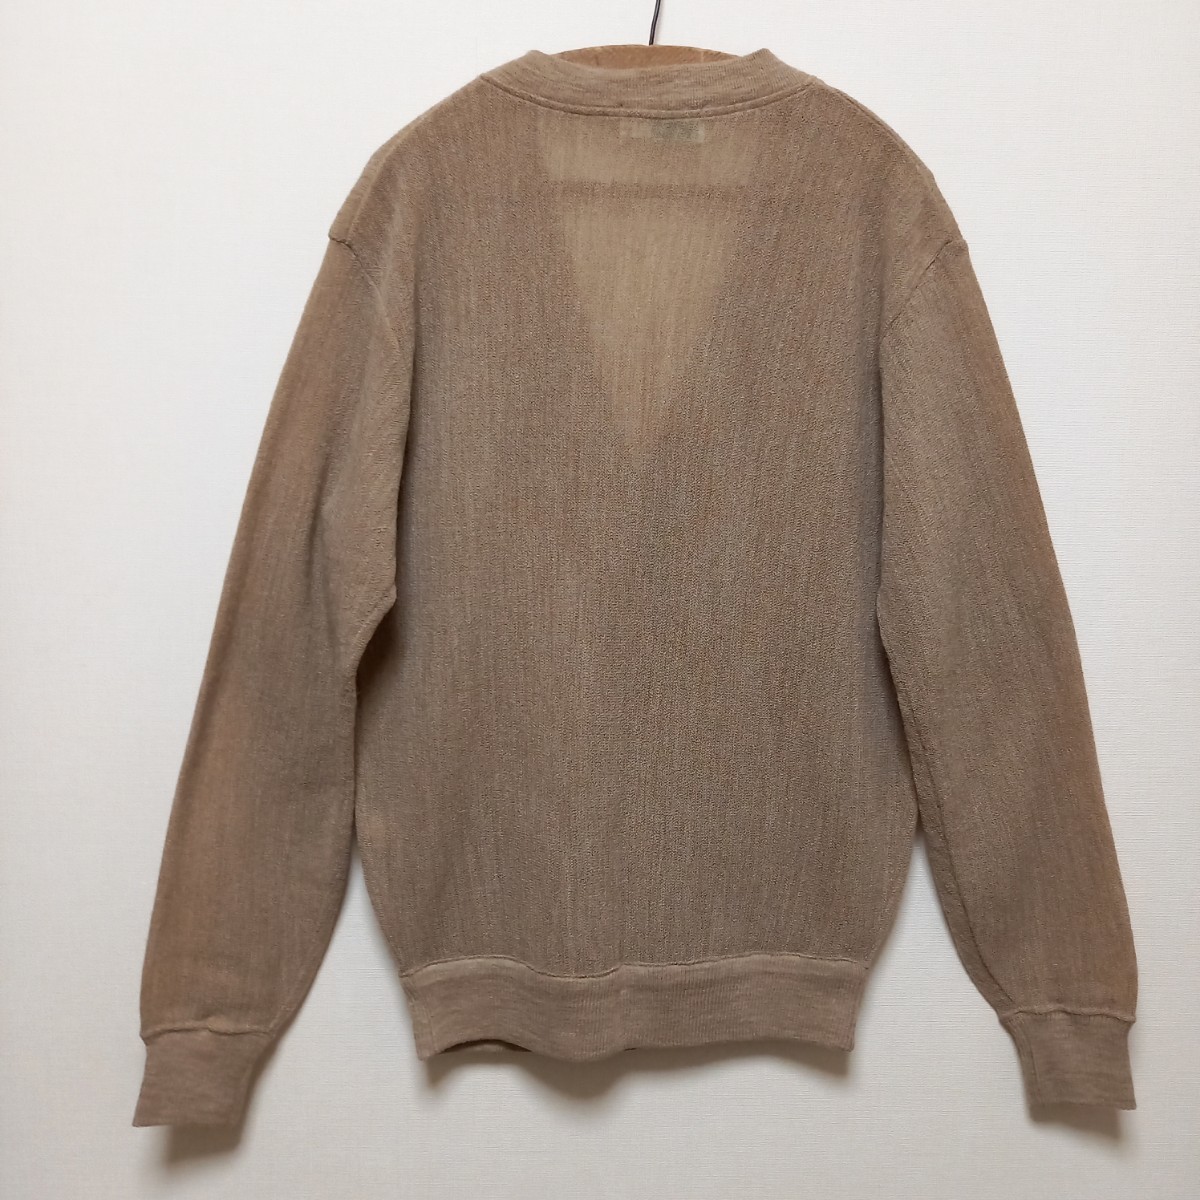 { неиспользуемый товар / новый товар }80s Munsingwear одежда альпака акрил жемчуг плетеный вязаный кардиган C80~90 мужской M Golf свитер 